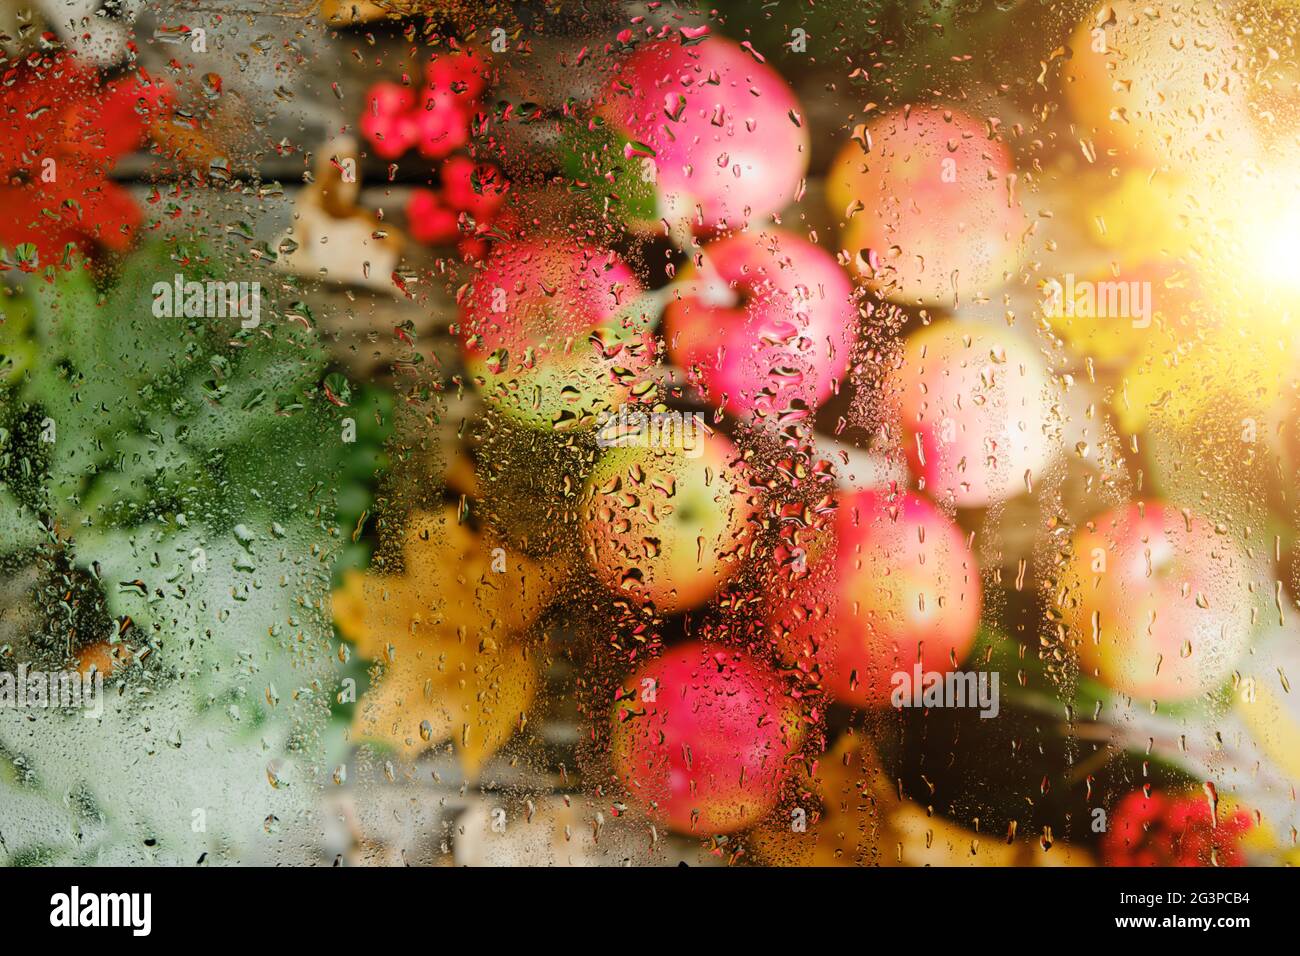 Autunno mele e foglie cadute, luce solare dietro vetro bagnato dalla pioggia Foto Stock